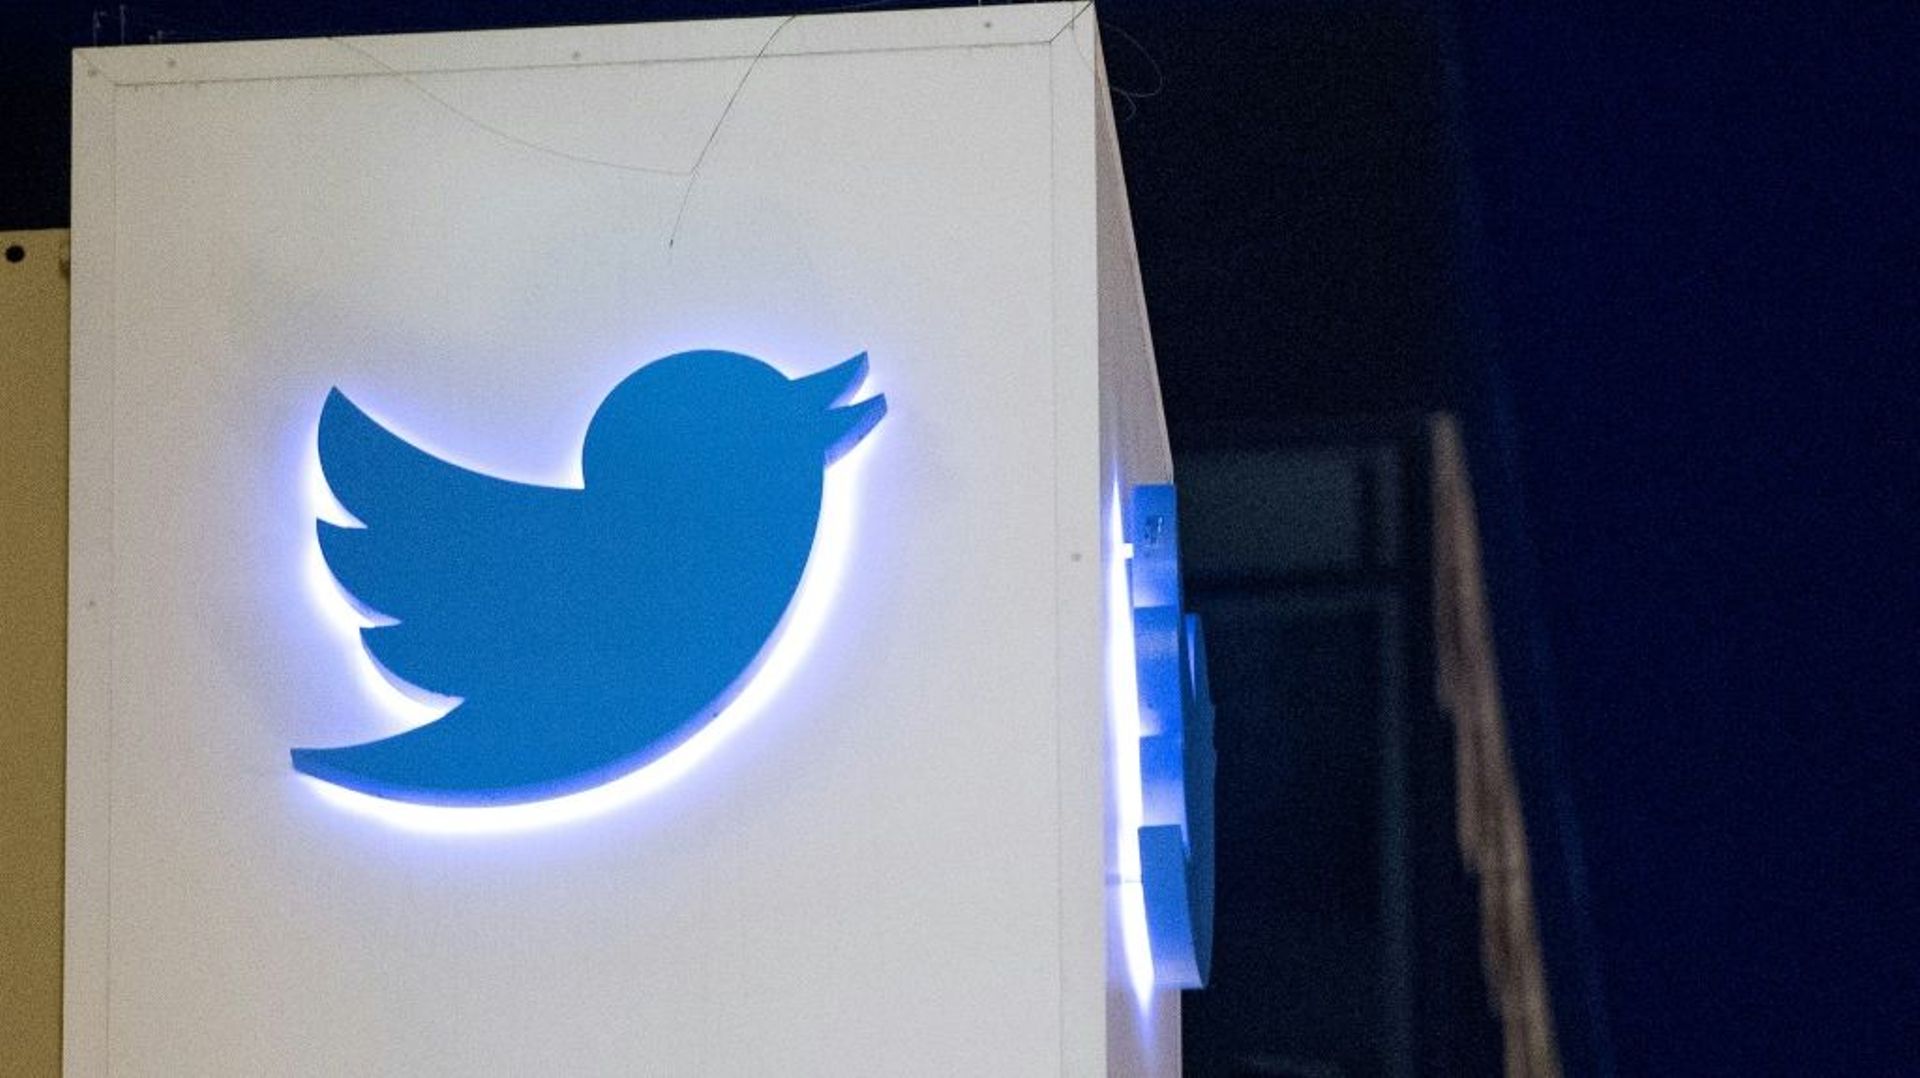 

Twitter a précisé avoir "informé les utilisateurs" concernés